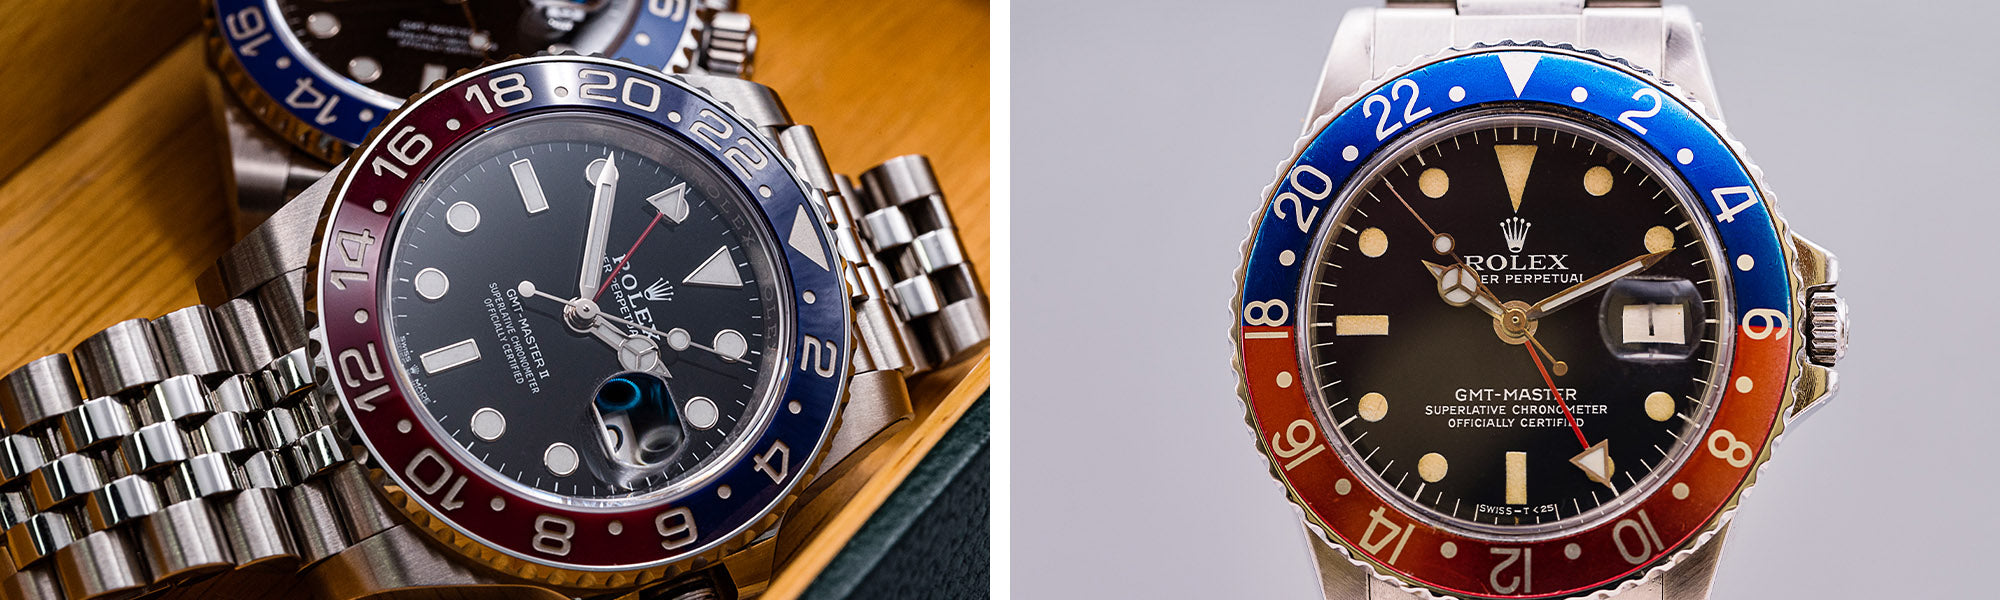 Rolex GMT master II watch